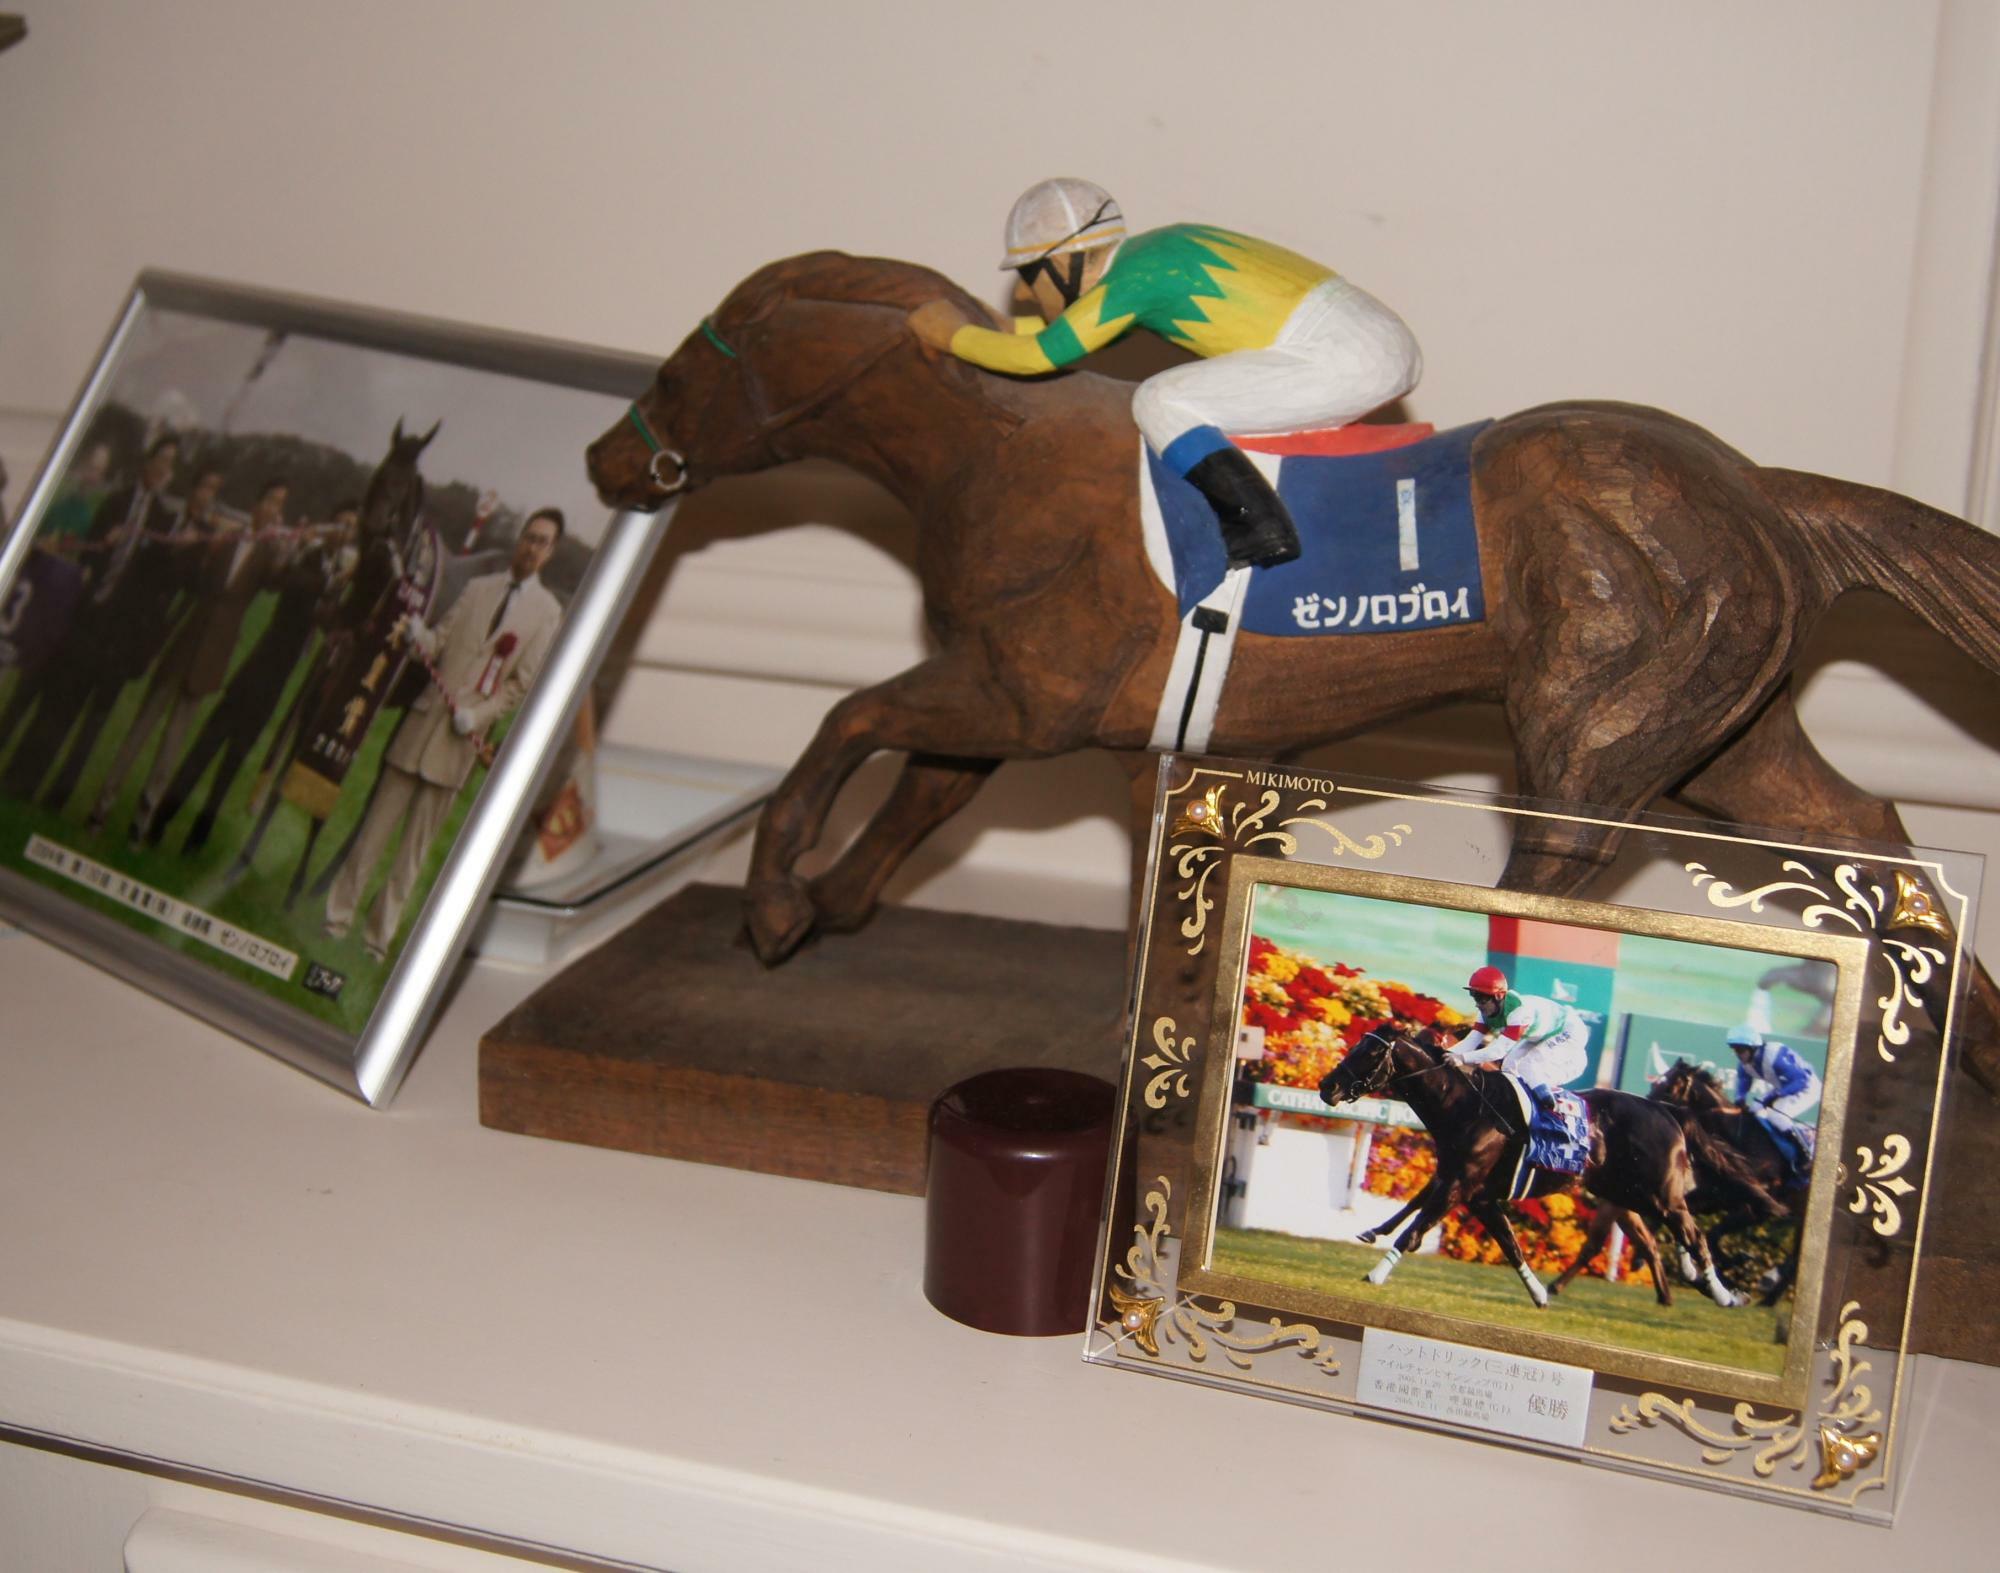 ペリエ邸には日本競馬での思い出の品も沢山置かれていた